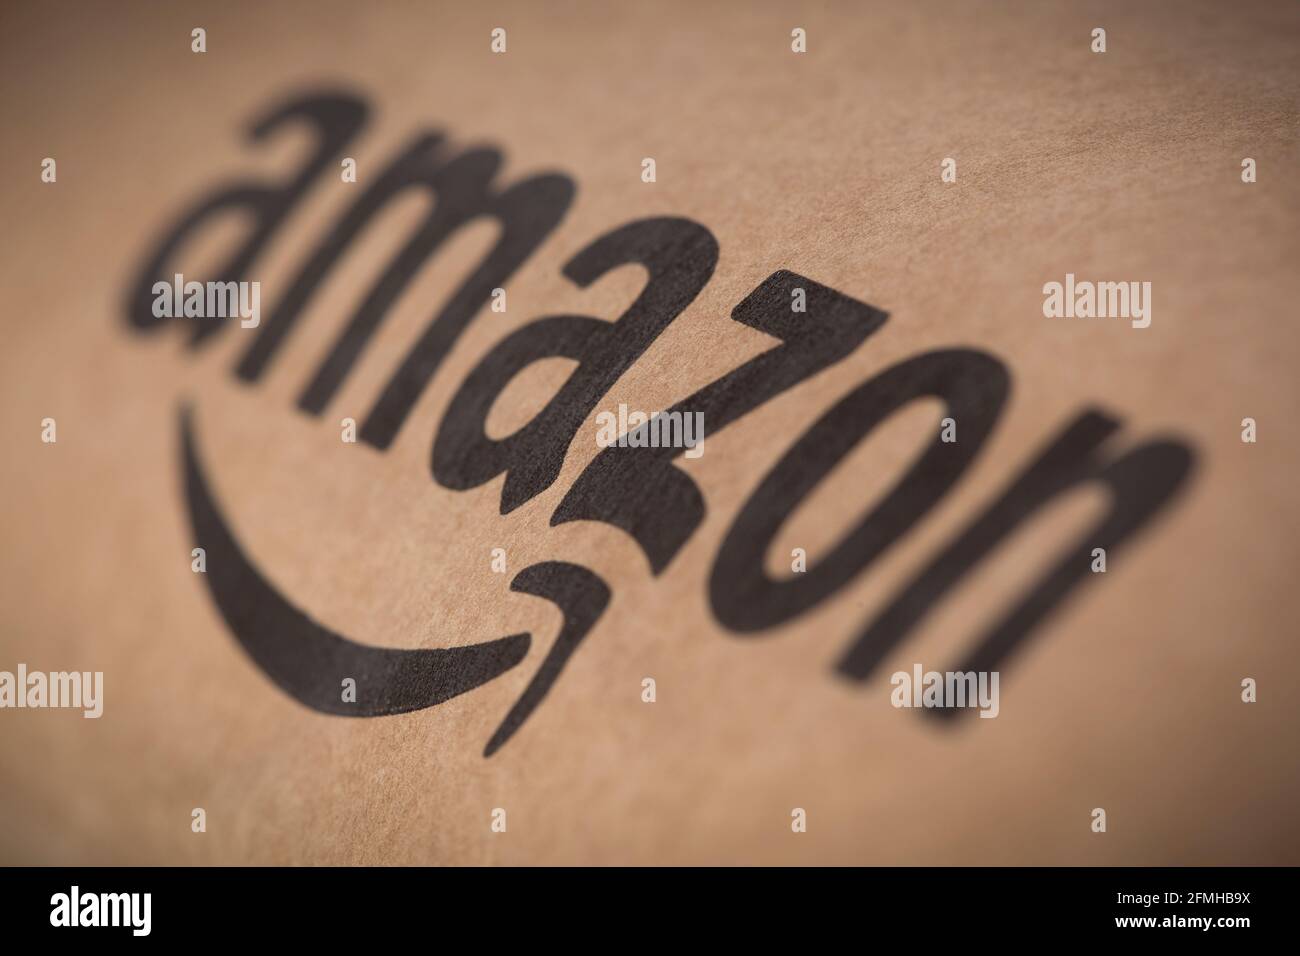 Un primo piano del logo del rivenditore online Amazon, come mostrato su alcune confezioni. Foto Stock